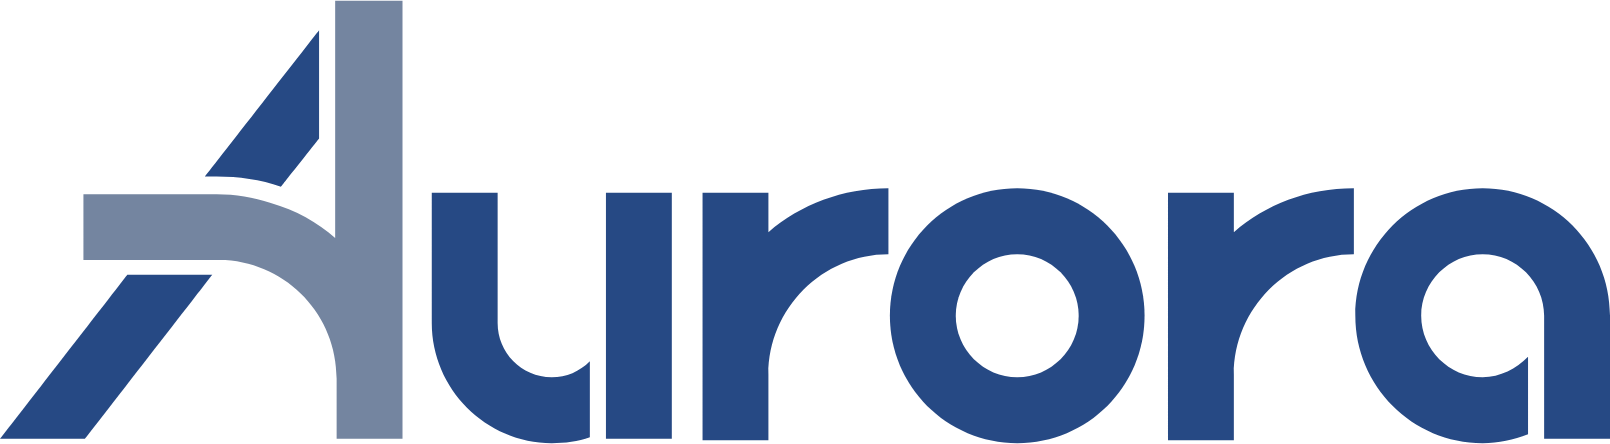 Aurora Innovation logo large (transparent PNG)